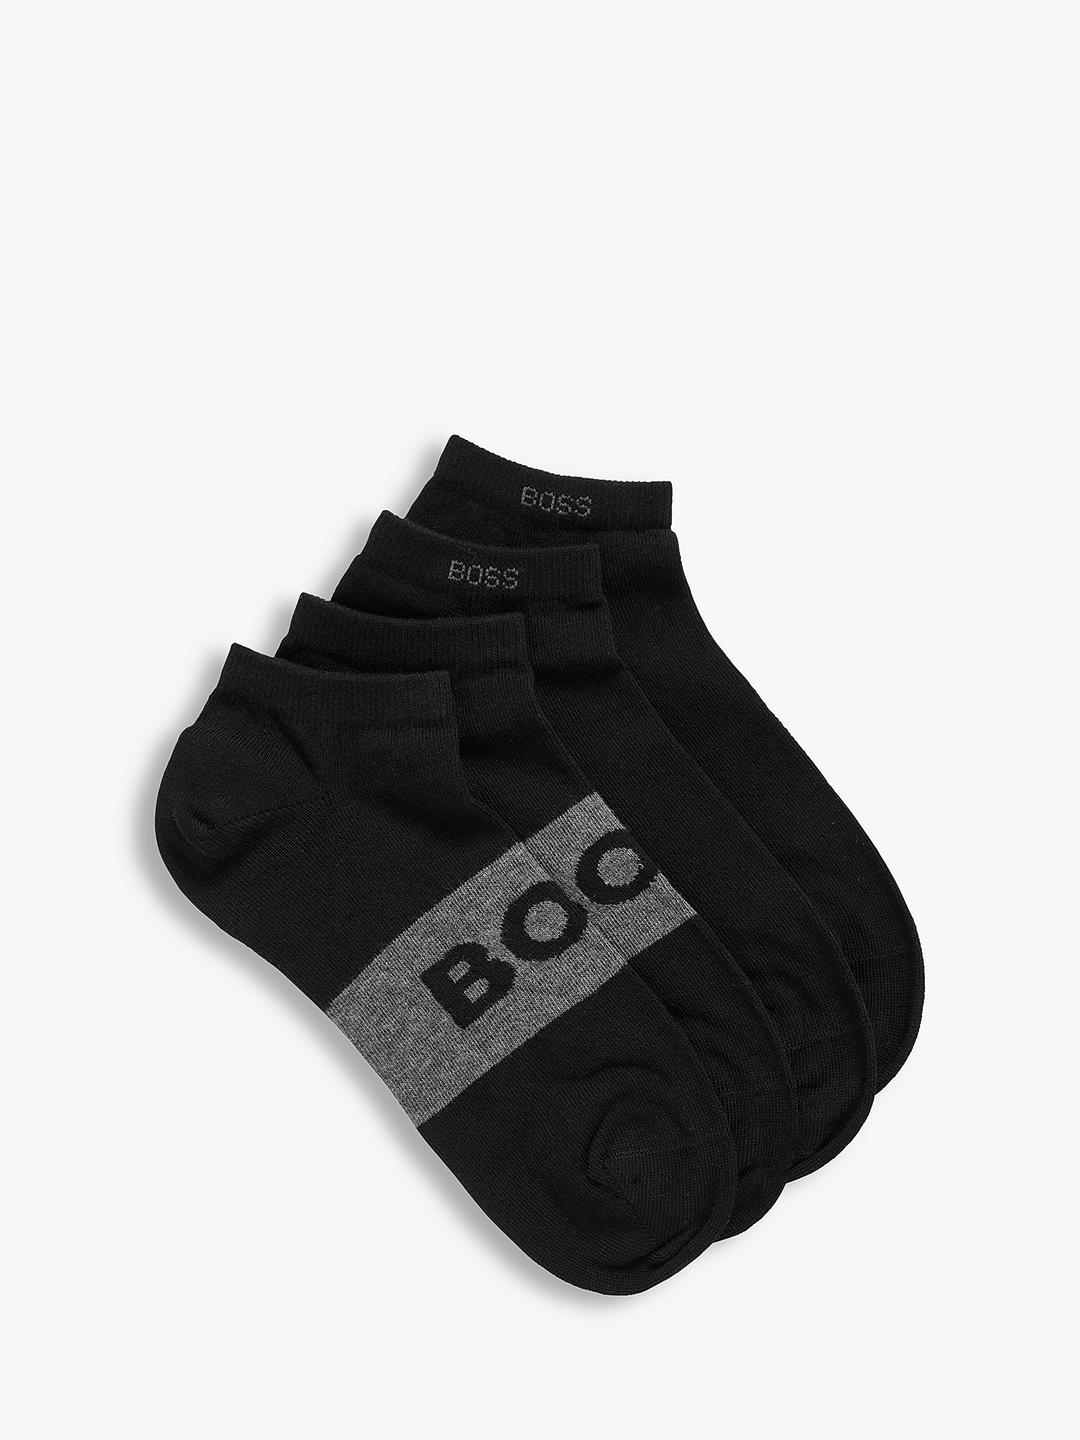 BOSS Logo Trainer Socks, Pack of 2, Black